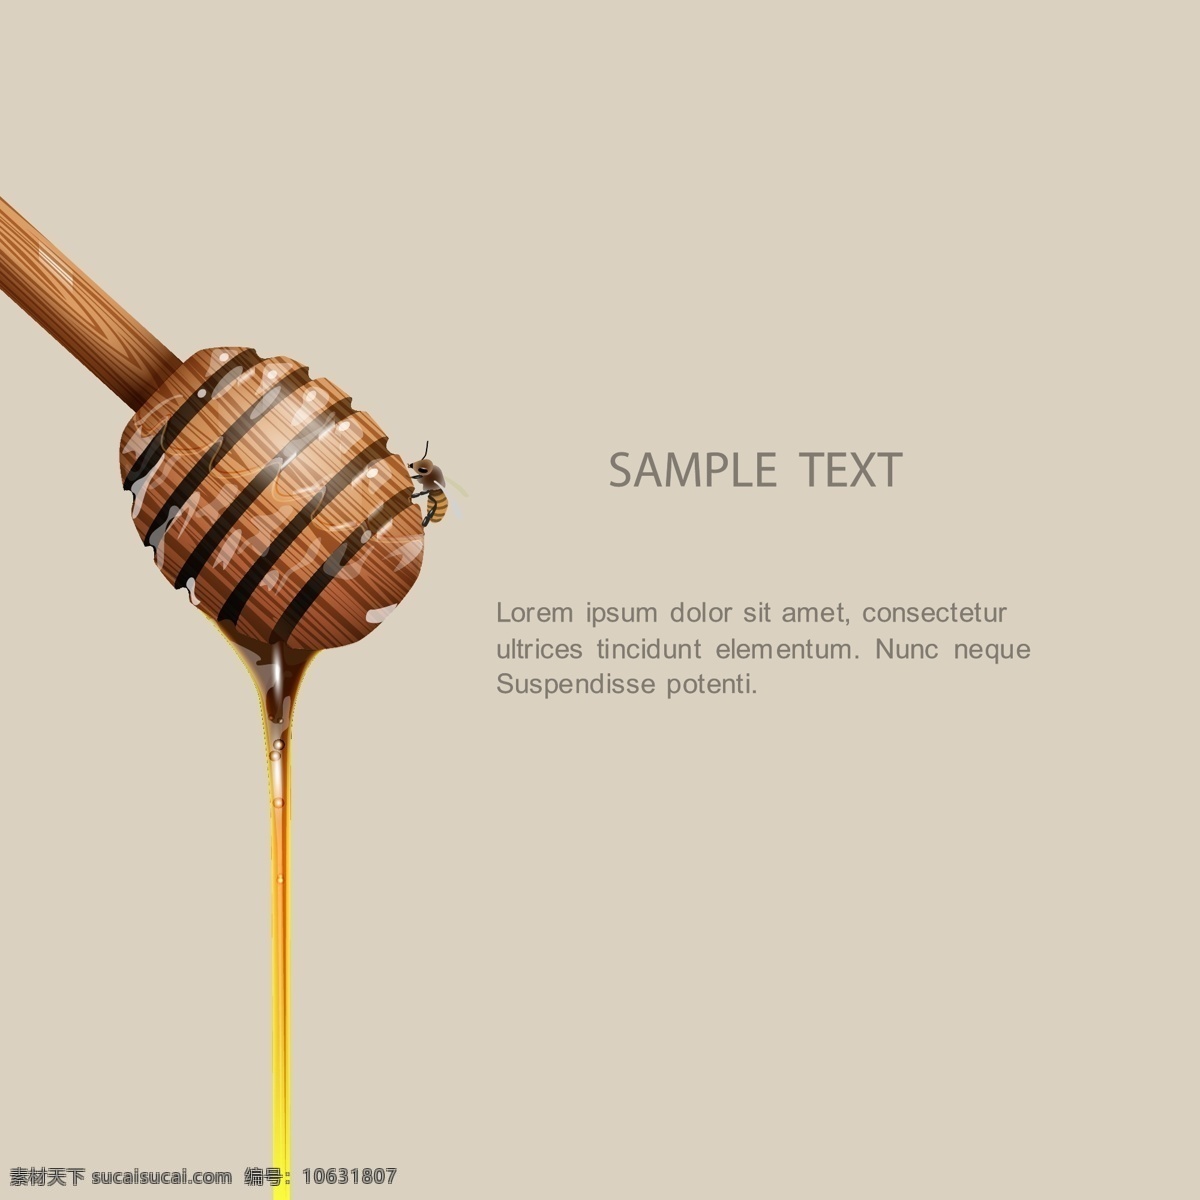 蜂蜜搅拌棒 蜜蜂 蜂蜜 搅拌棒 背景图 糖 甜味 矢量图 招贴设计